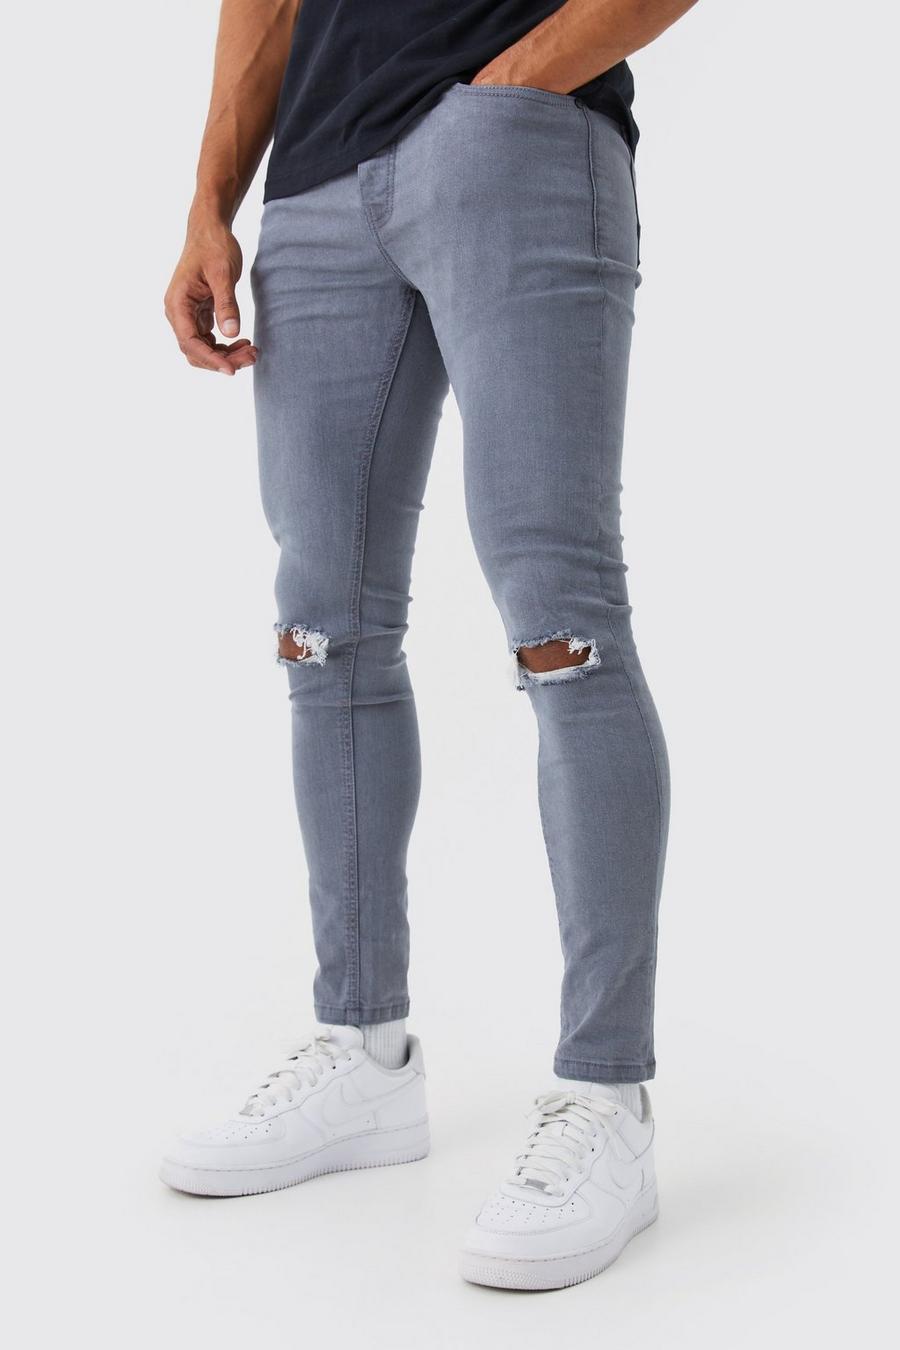 Jeans Super Skinny Fit Stretch con strappi sul ginocchio, Mid grey